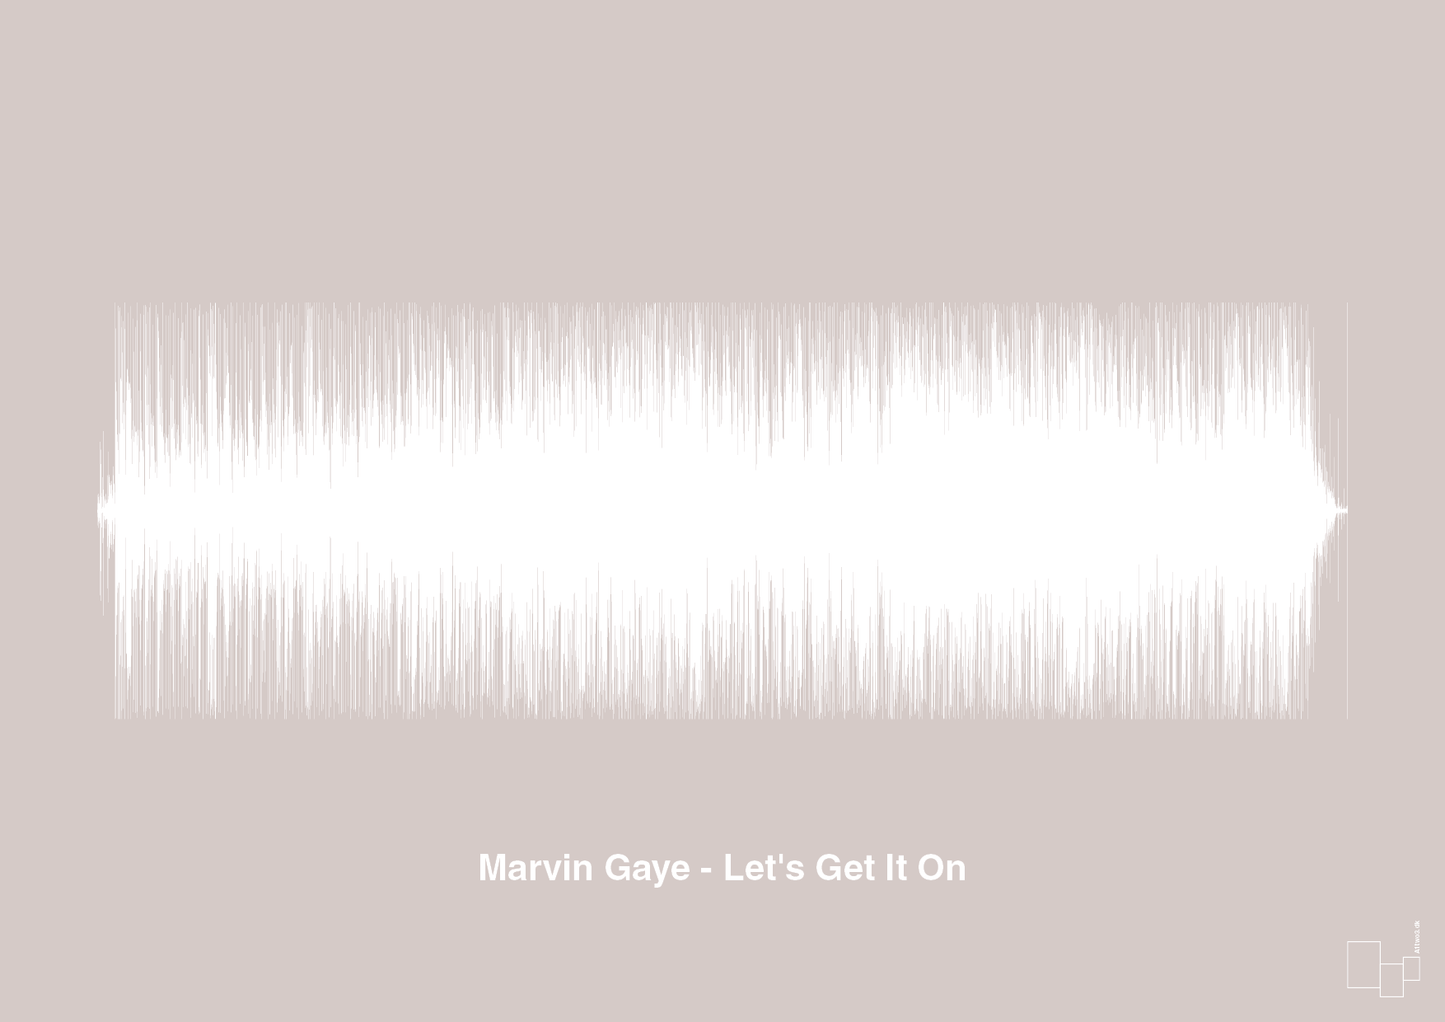 marvin gaye - let's get it on - Plakat med Musik i Broken Beige